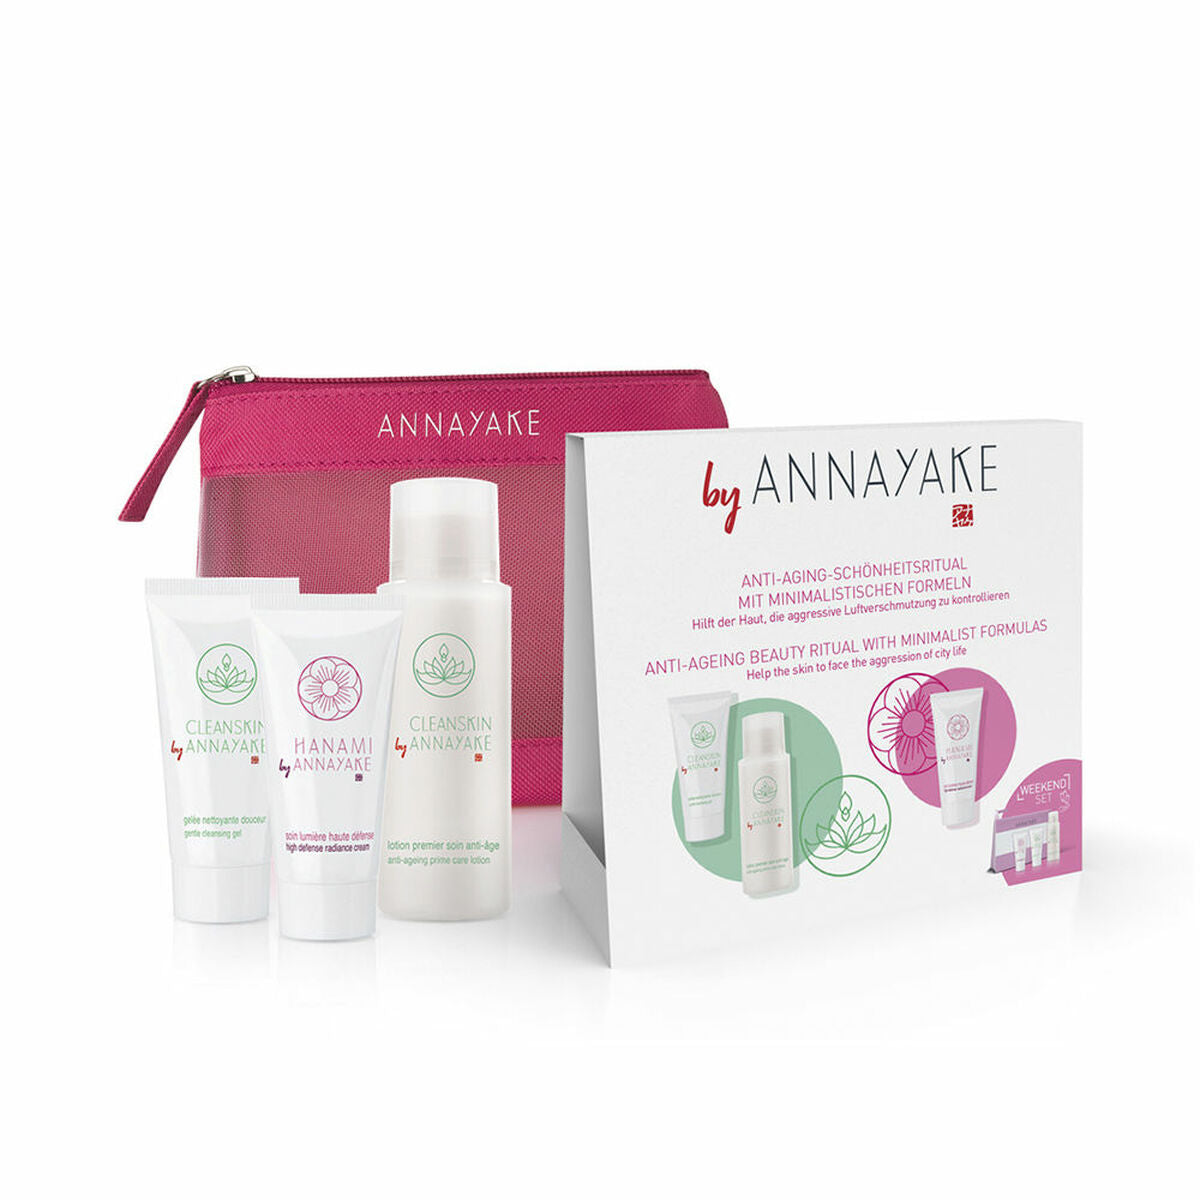 Kaufe Unisex-Kosmetik-Set Annayake Hanami 3 Stk. bei AWK Flagship um € 51.00